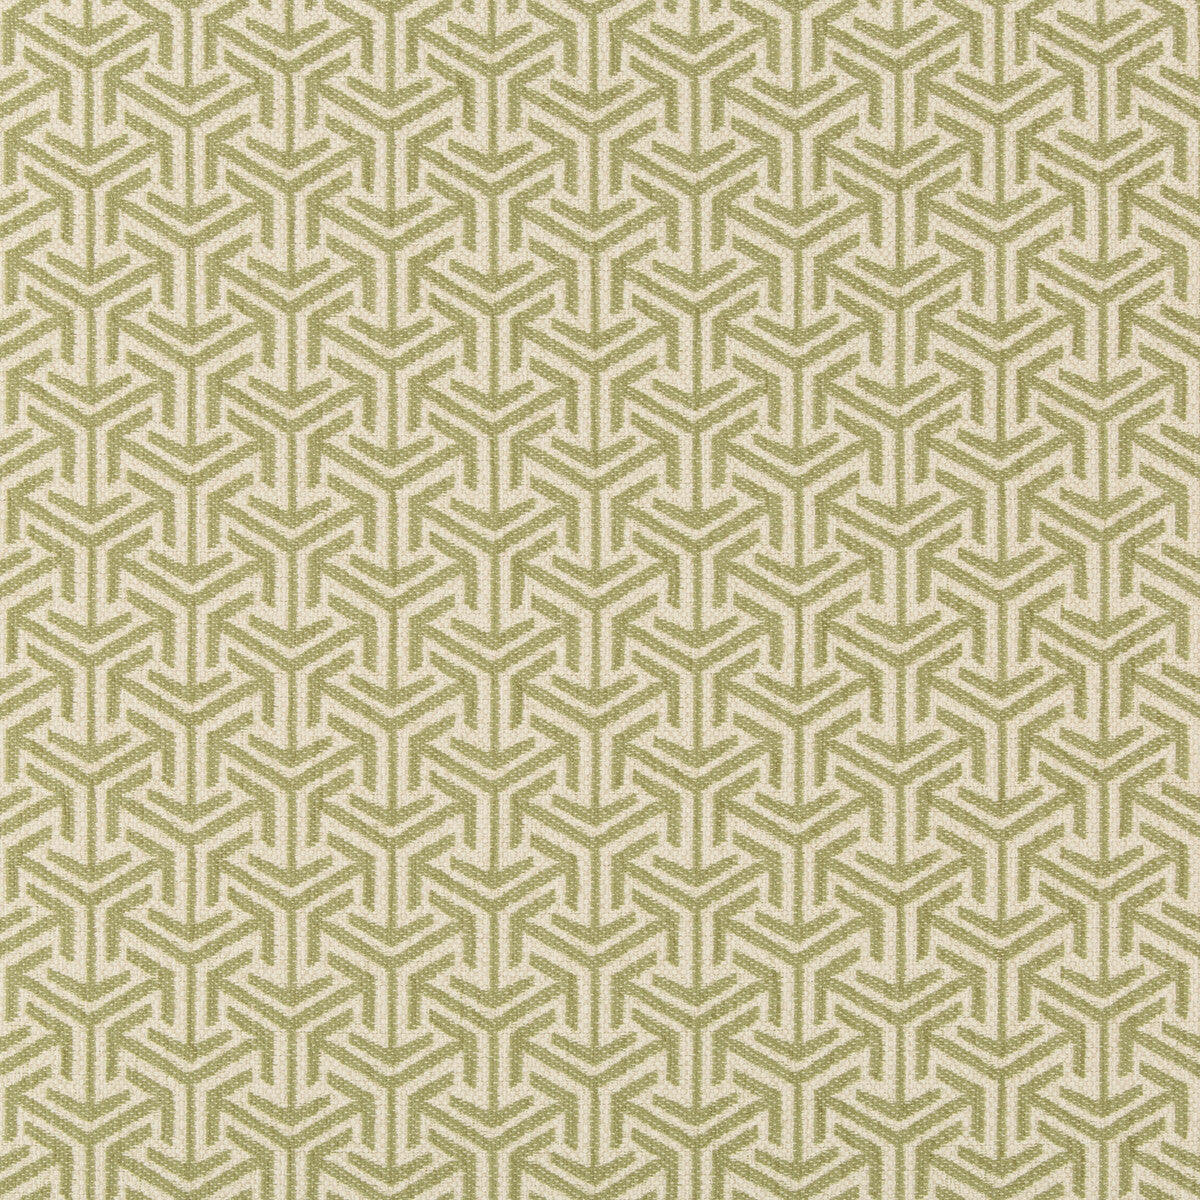 Kravet Design fabric in 35715-130 color - pattern 35715.130.0 - by Kravet Design